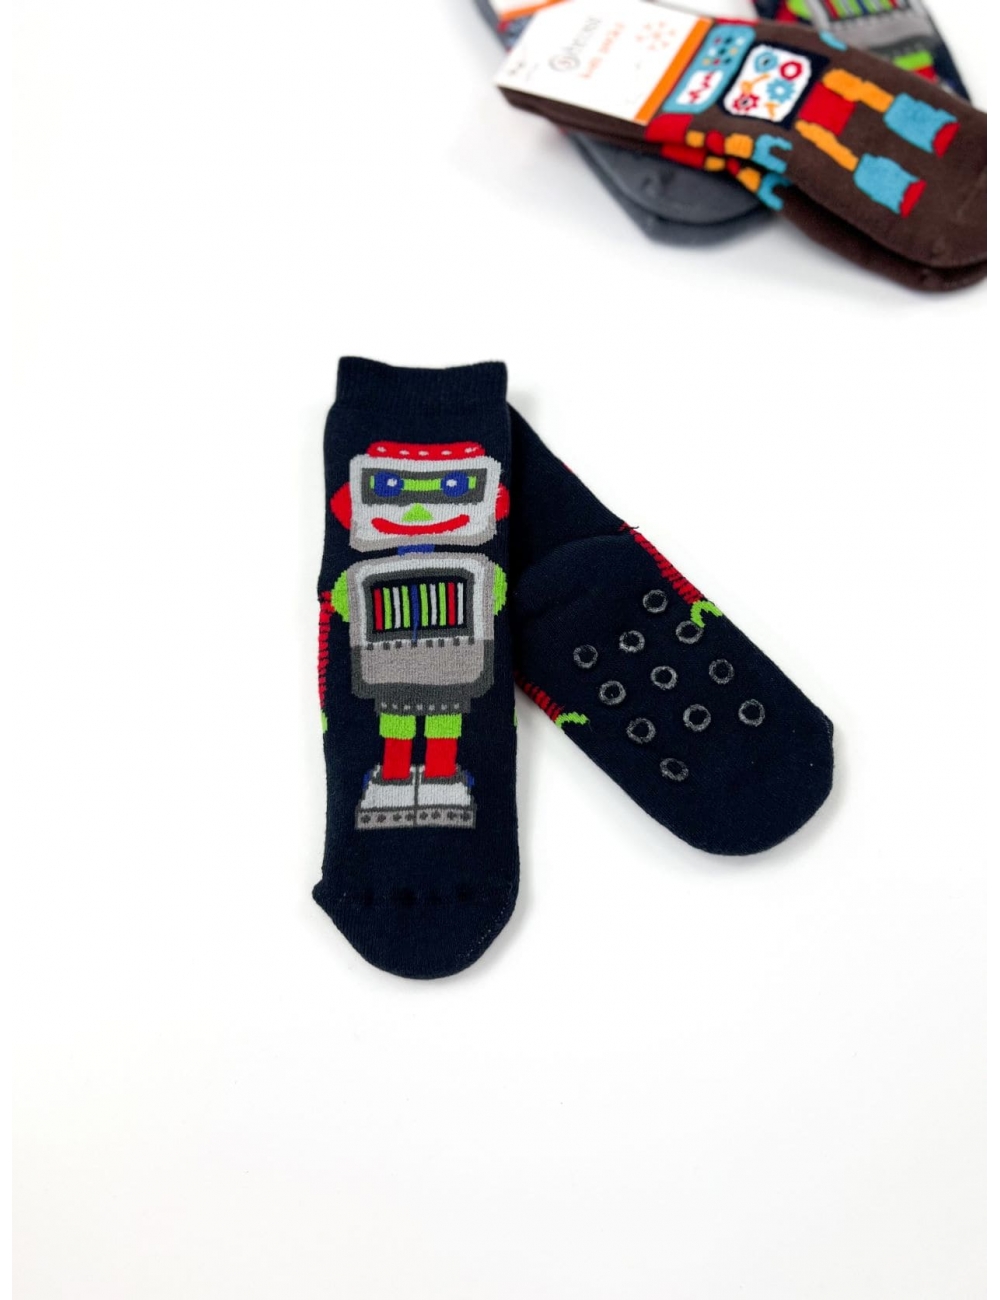 Махрові дитячі шкарпетки для хлопчиків тм "Bross" Робот сині